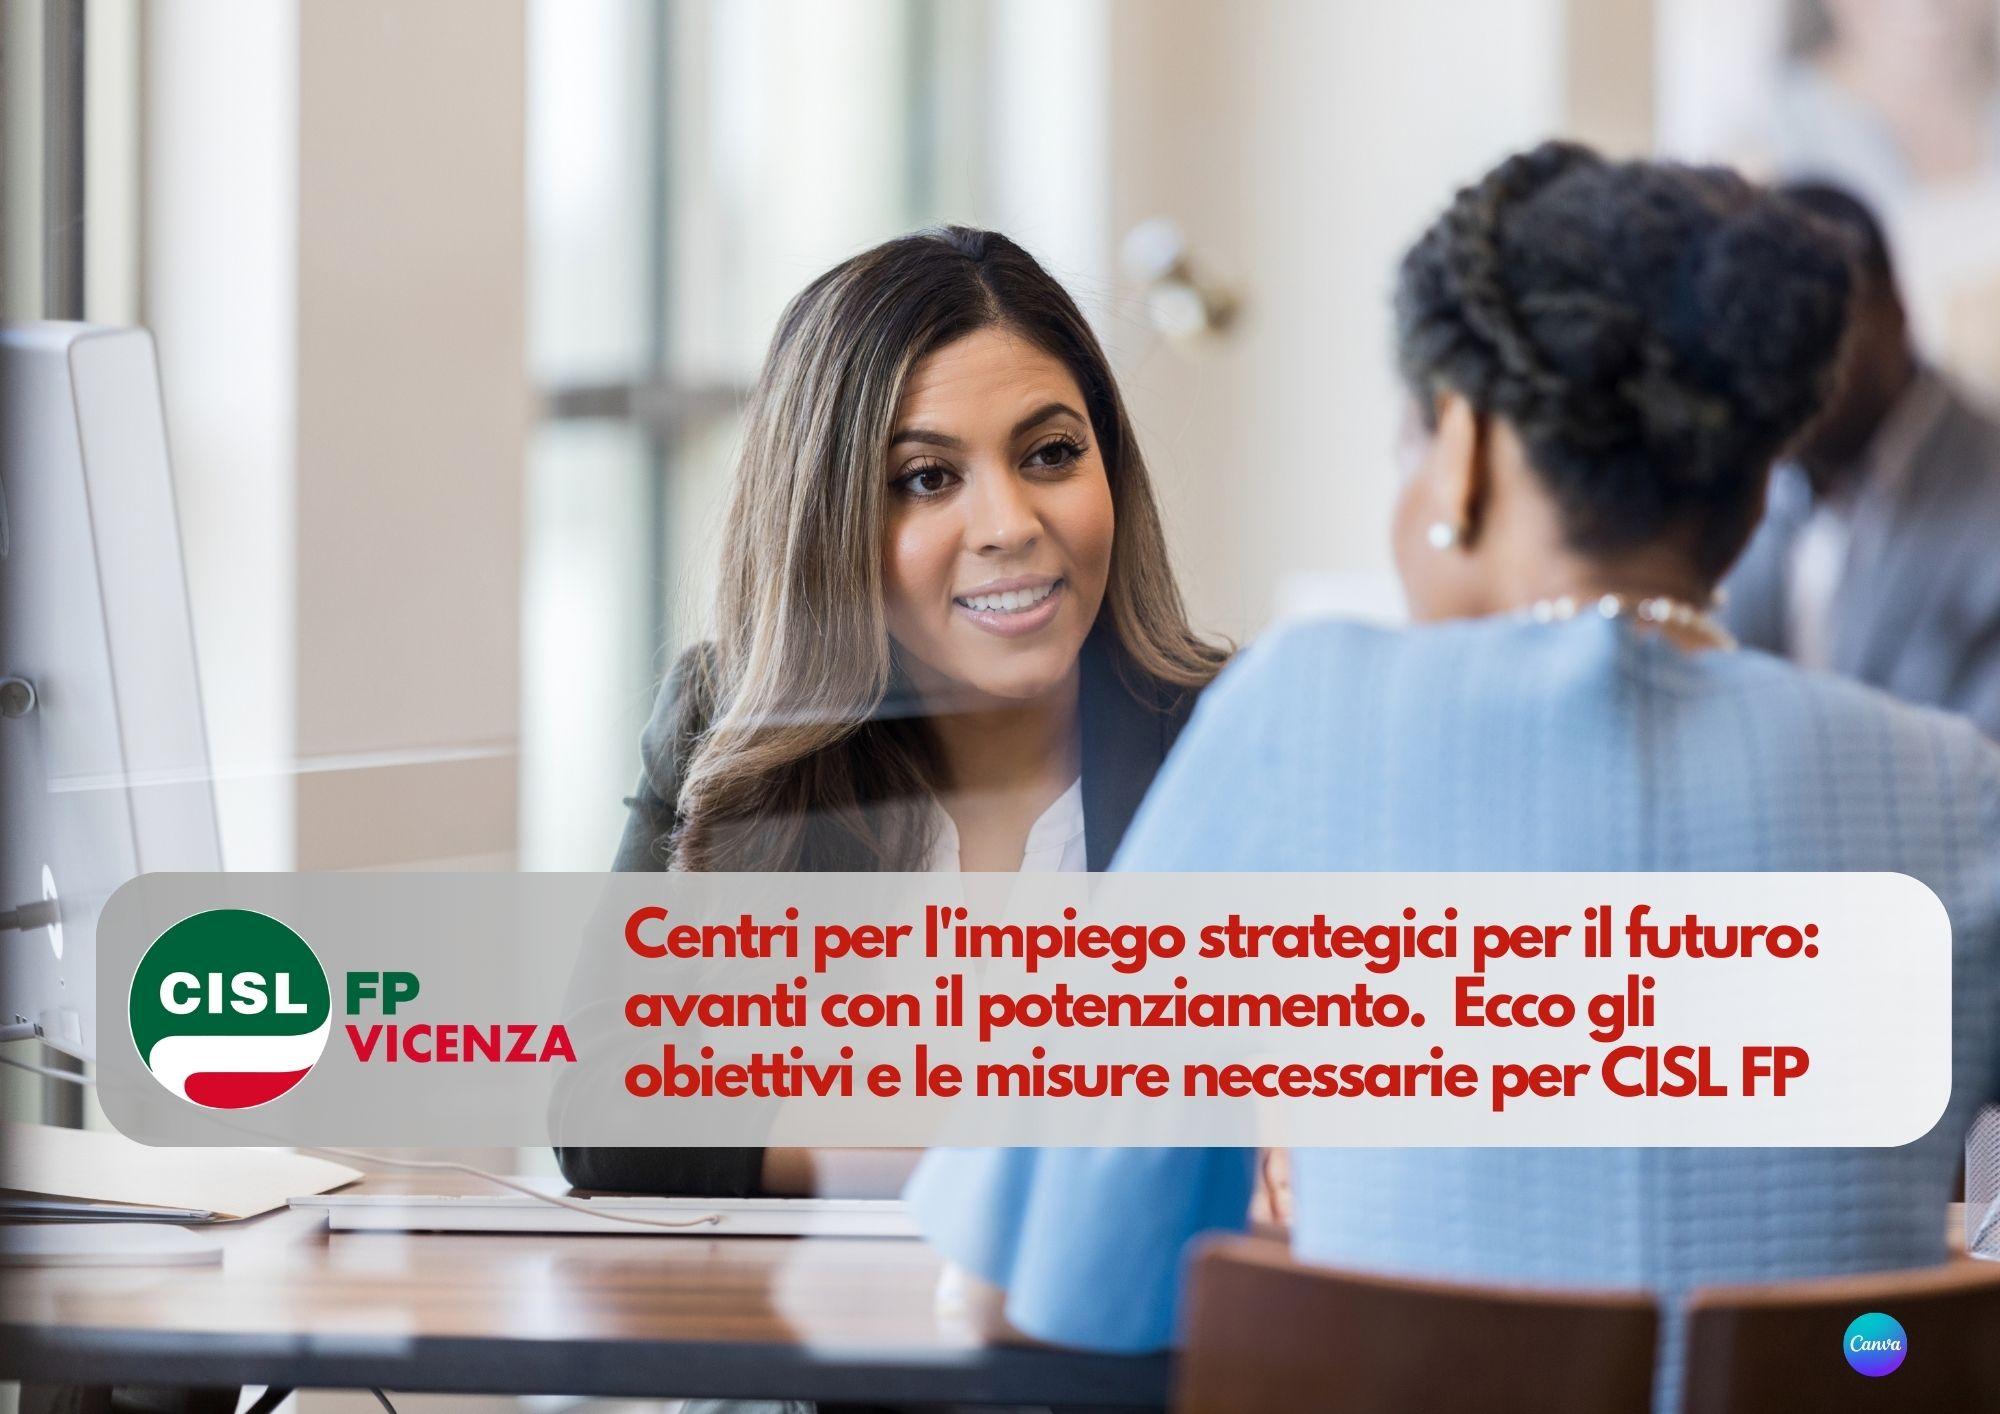 CISL FP Vicenza. Centri per l'impiego strategici per il futuro: avanti con il potenziamento